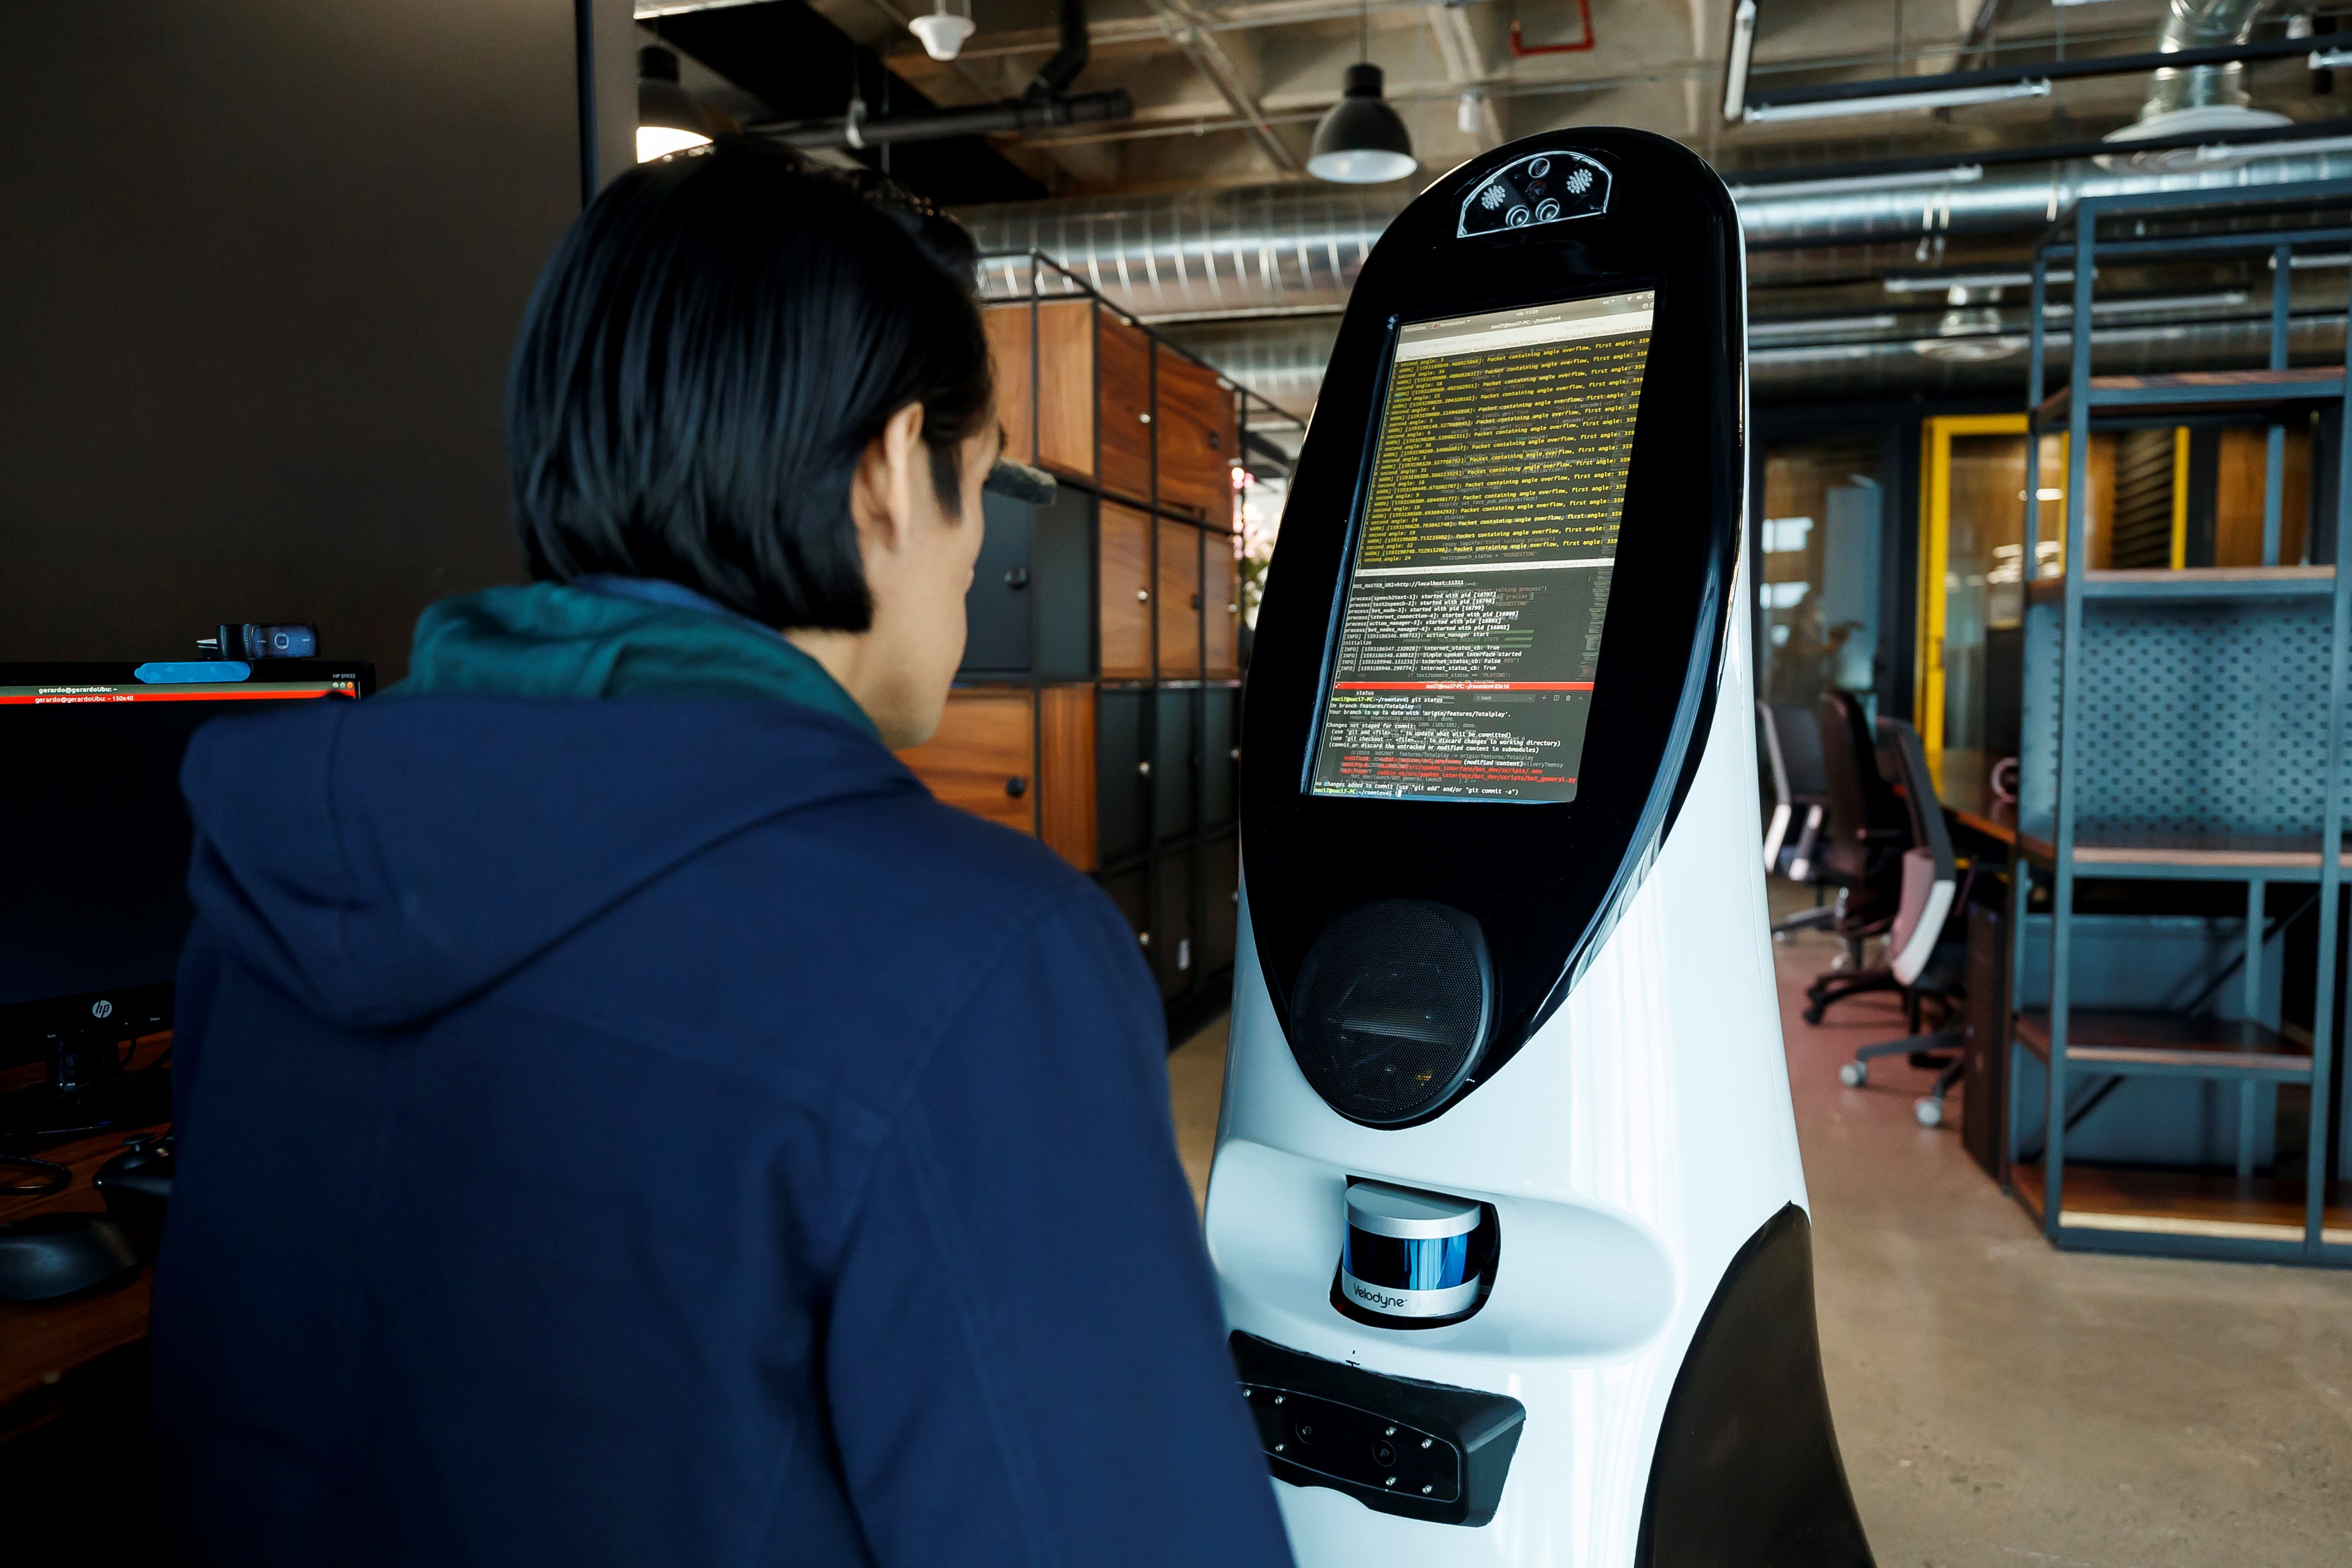 El robot mexicano es capaz de medir la temperatura y el oxígeno en la sangre, e interactuar verbalmente con pacientes para identificar síntomas de coronavirus. (Foto Prensa Libre: EFE)